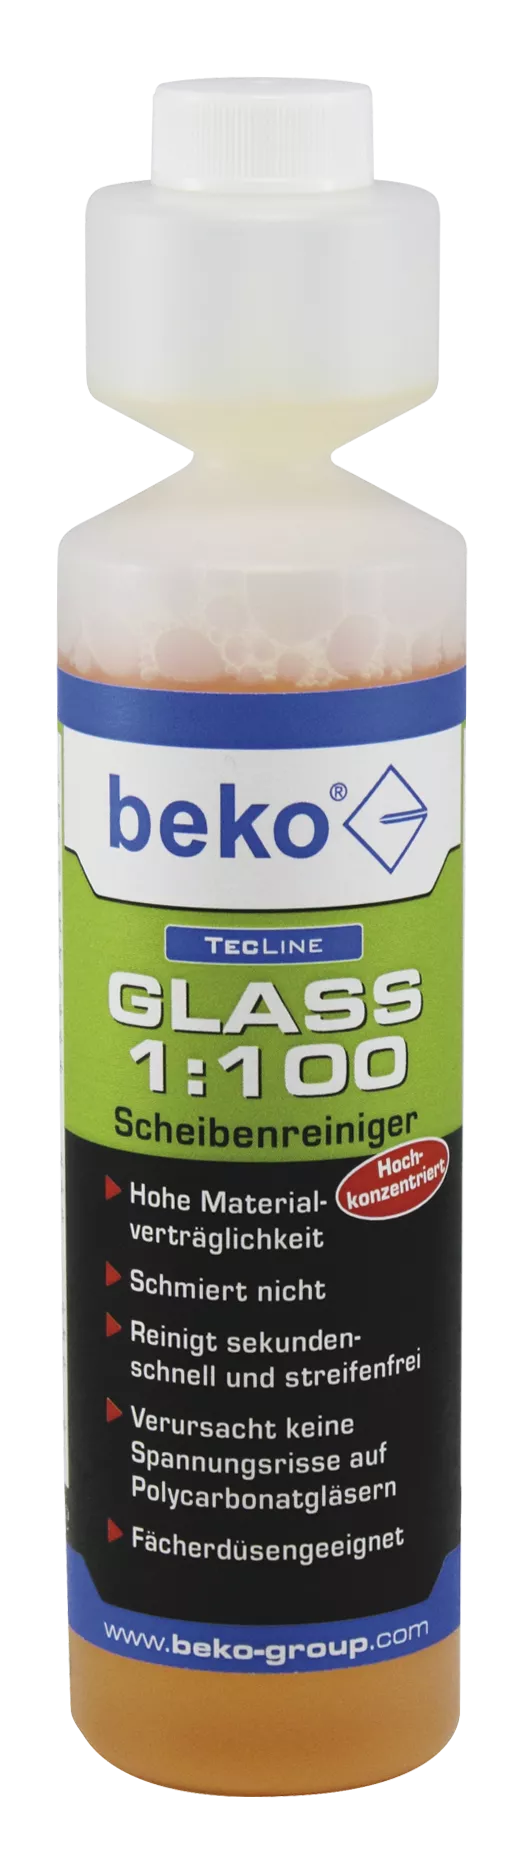 TecLine GLASS 1:100 Scheibenreiniger, Konzentrat 250 ml